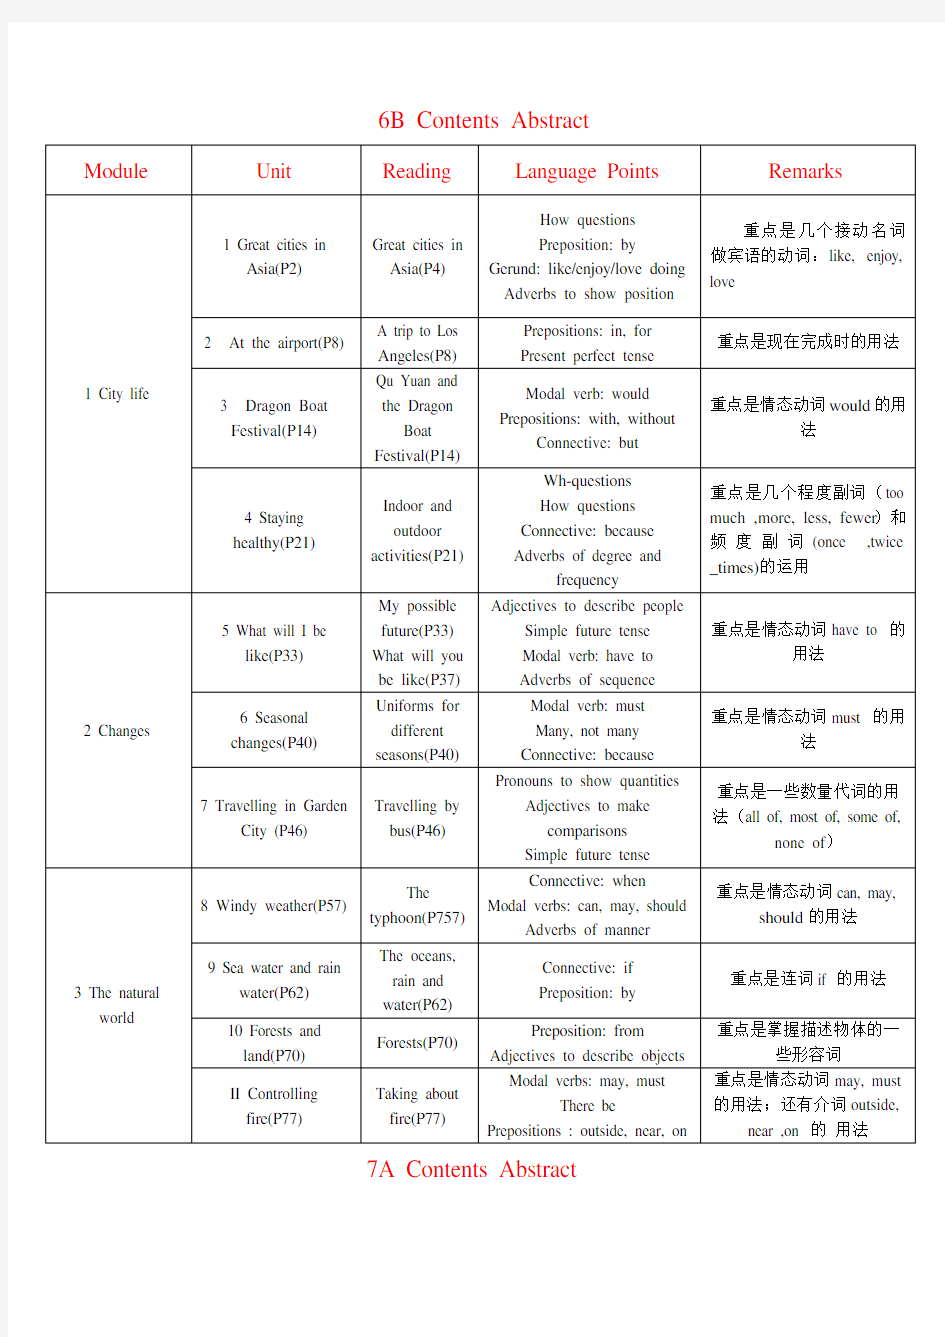 上海牛津版初中英语语言点及语法总结